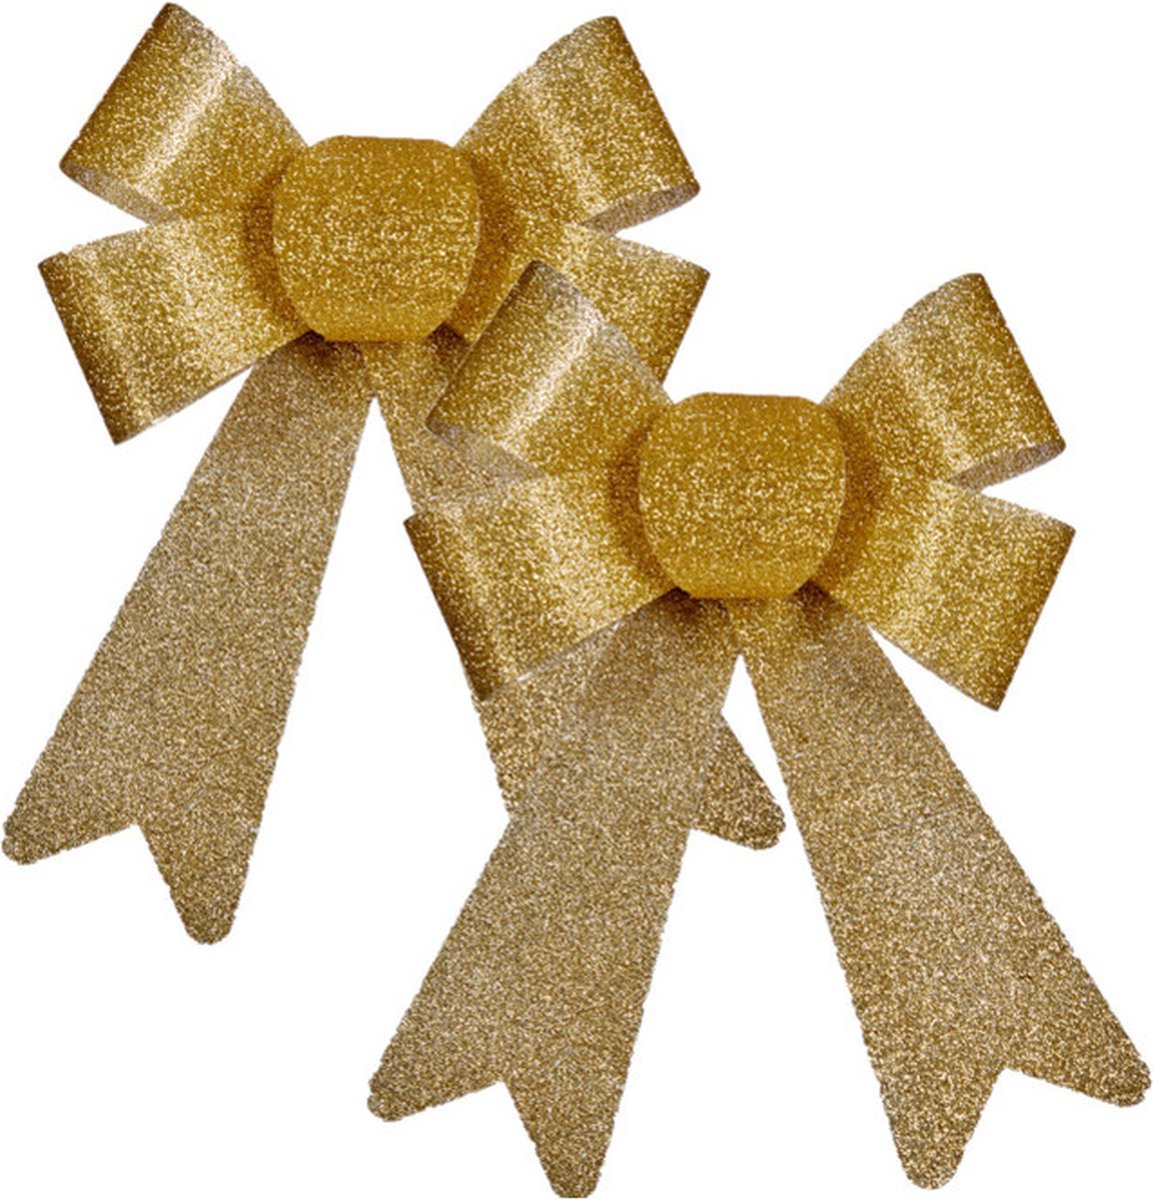 4x stuks kerstboomversieringen kleine ornament strikjes/strikken gouden glitters 15 x 17 cm - Met ophanging